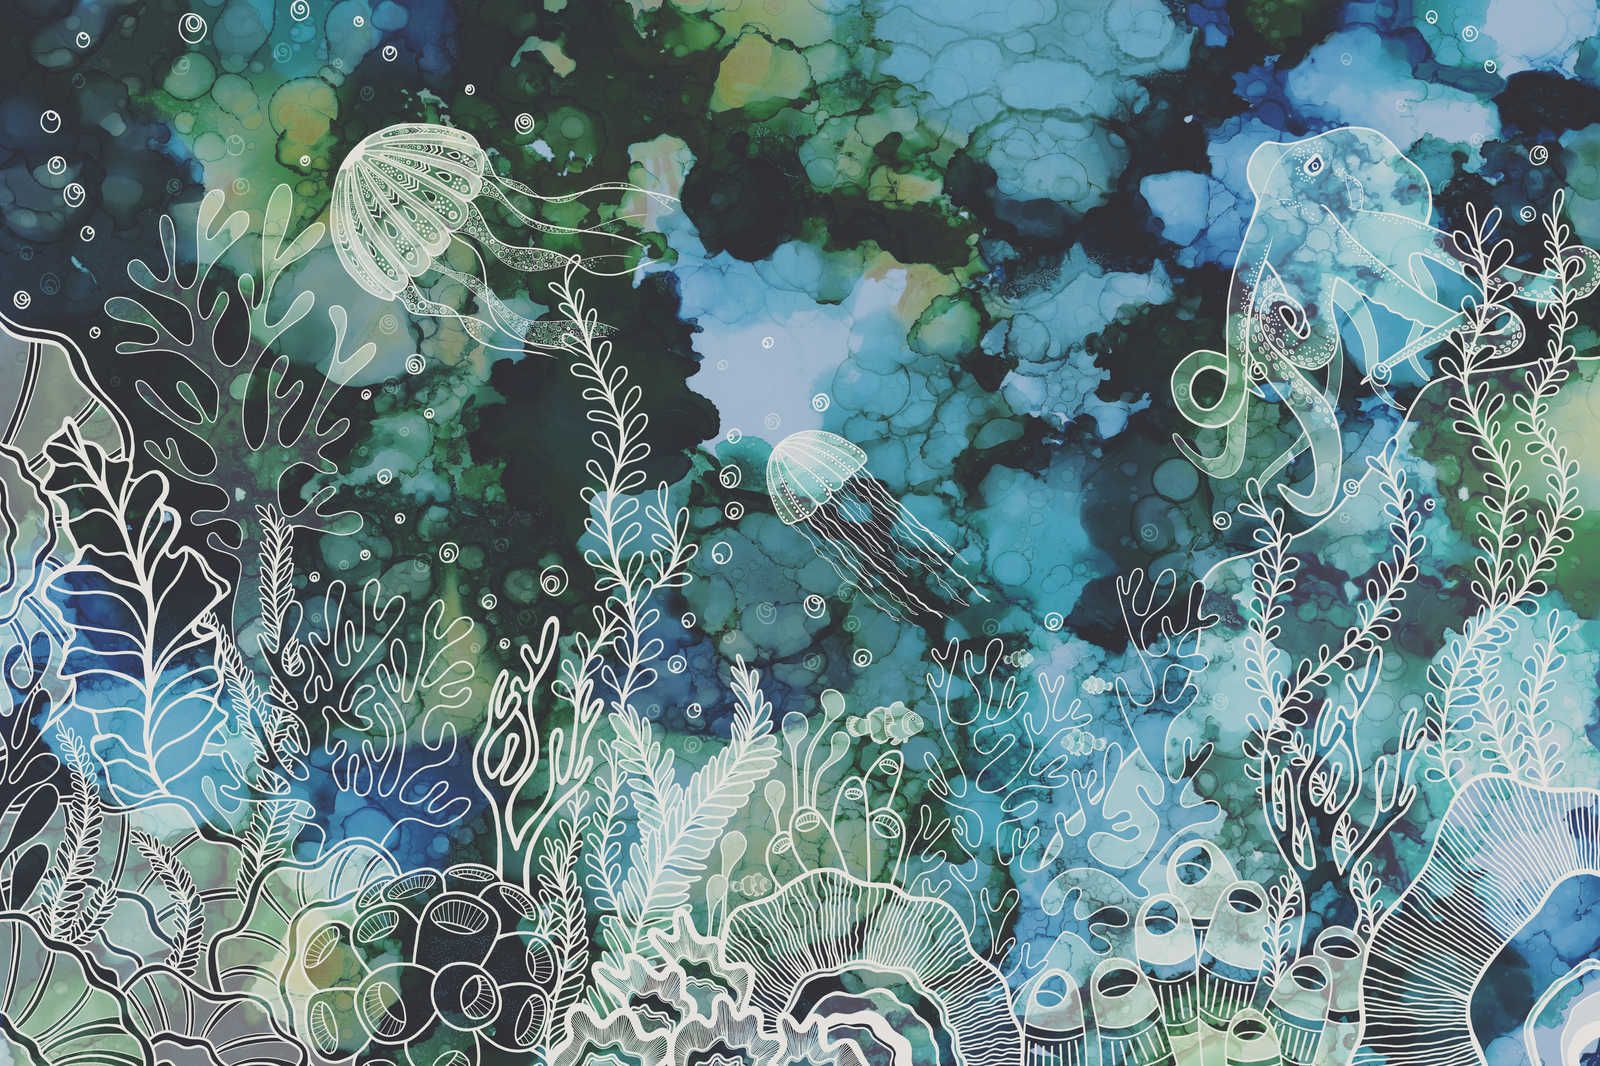             Quadro su tela con barriera corallina subacquea in colori acrilici - 0,90 m x 0,60 m
        